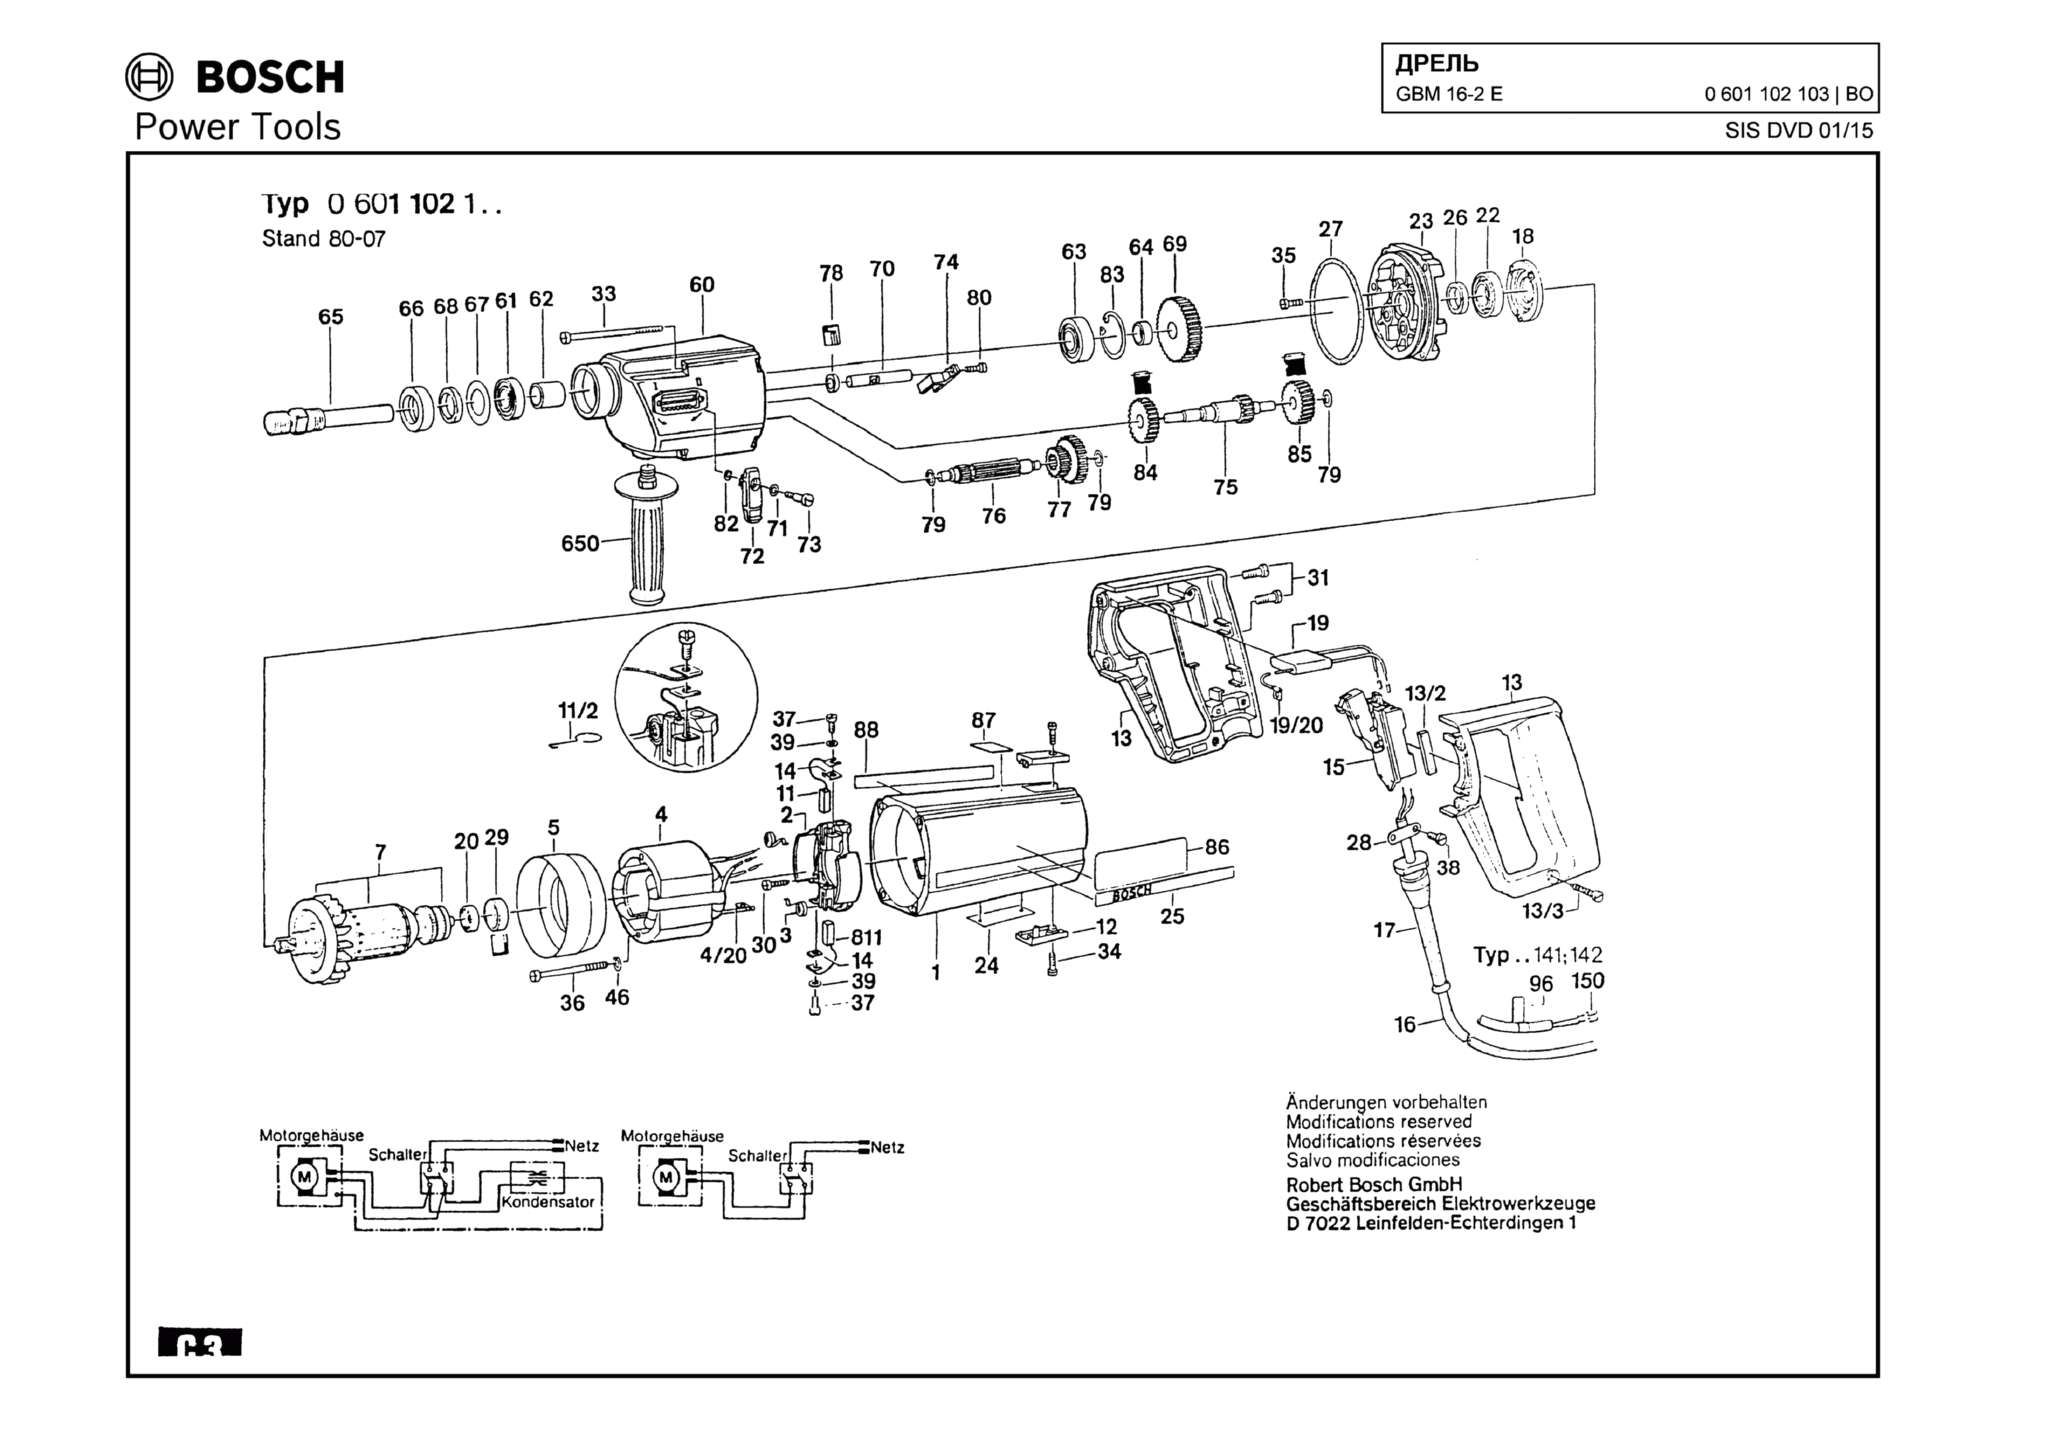 Запчасти, схема и деталировка Bosch GBM 16-2 E (ТИП 0601102103)